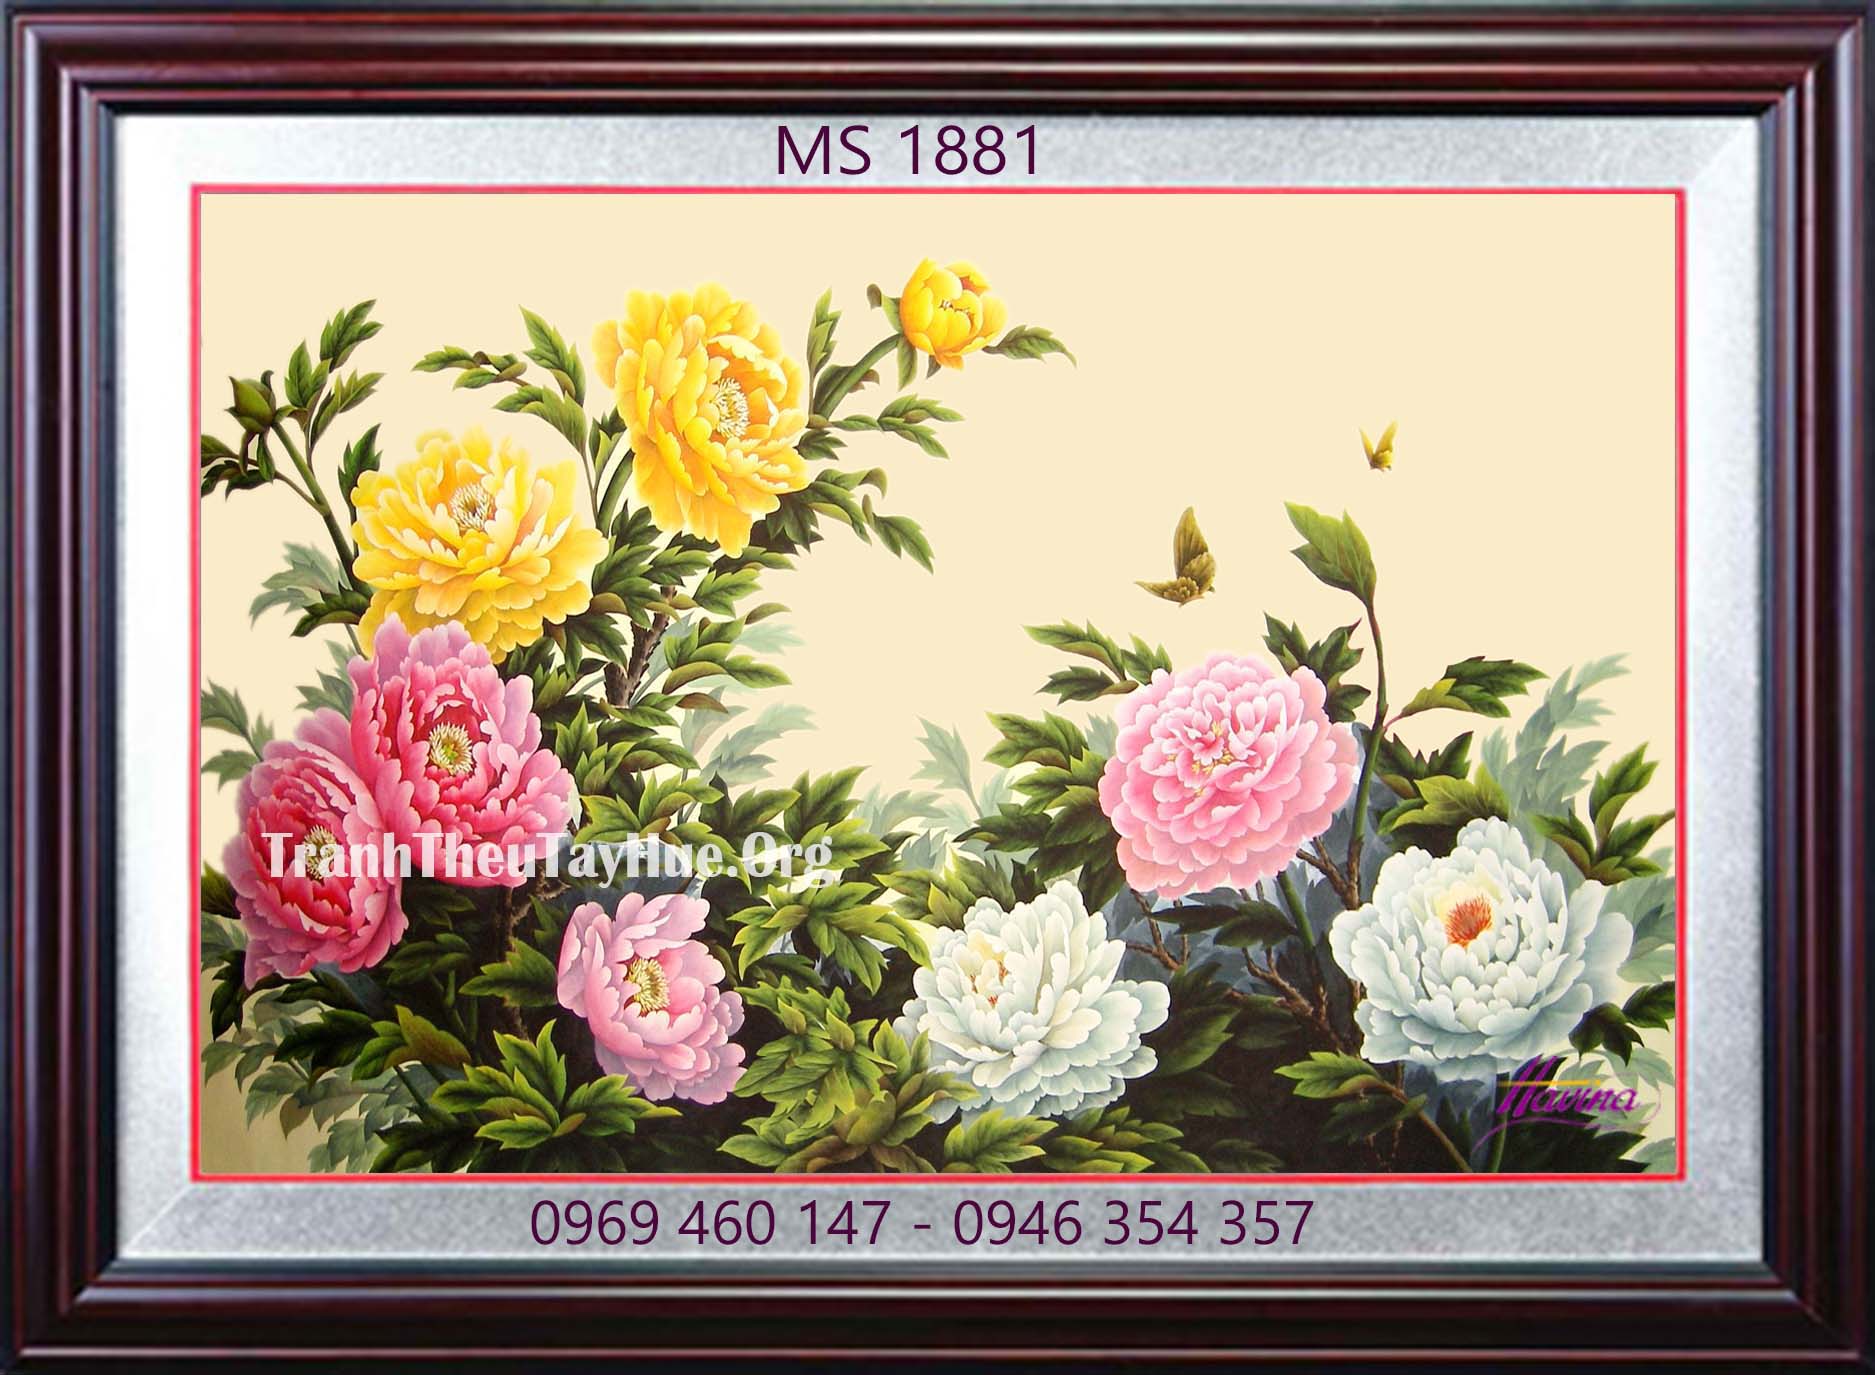 Tranh thêu hoa mẫu đơn MS 1881